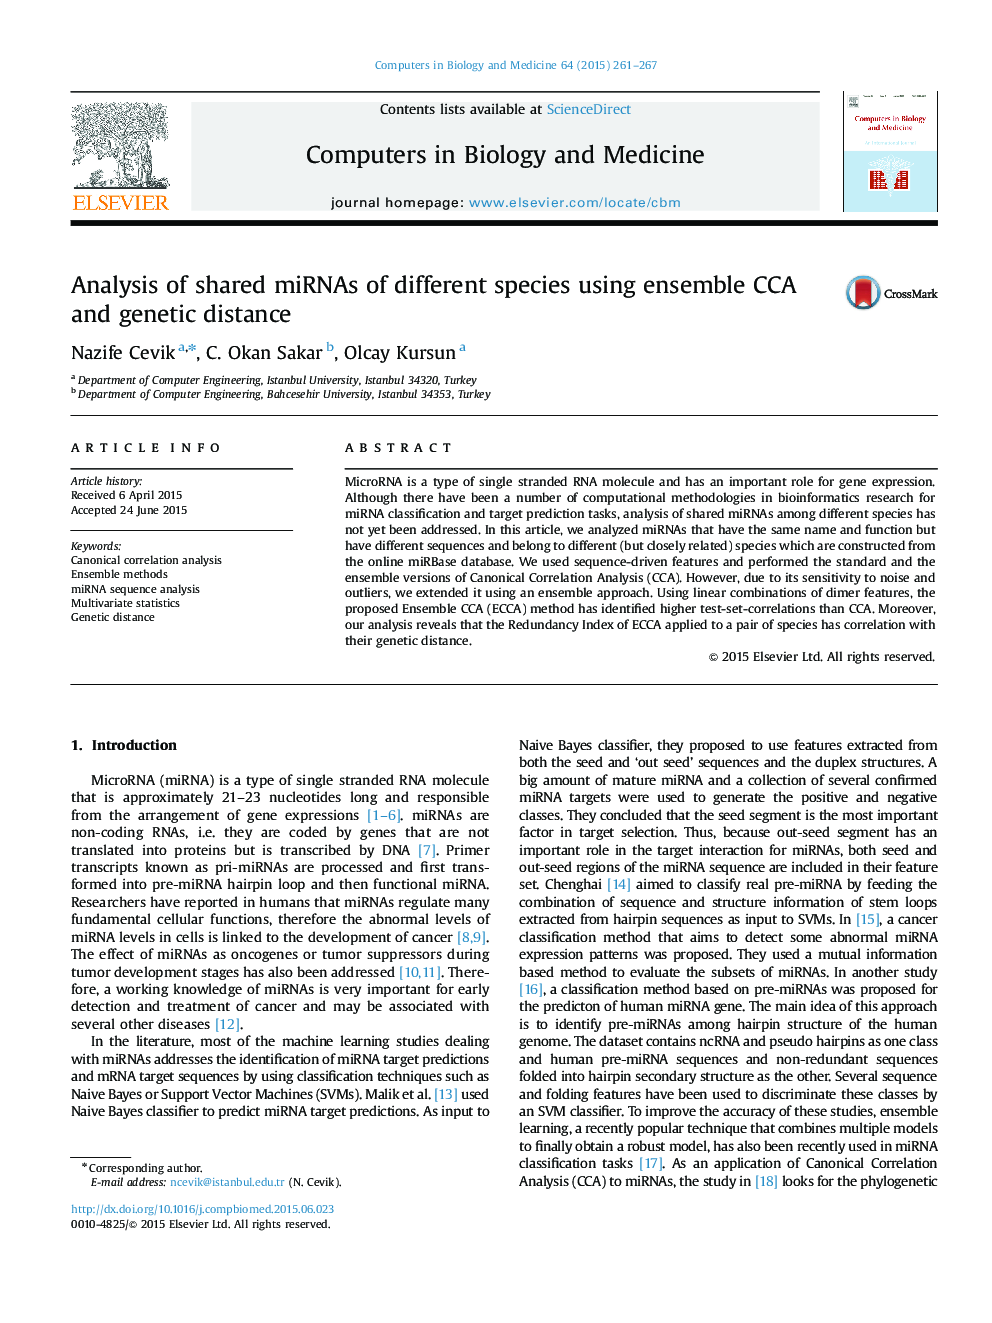 تجزیه و تحلیل miRNA های مشترک از گونه های مختلف با استفاده از مجموعه CCA و فاصله ژنتیکی